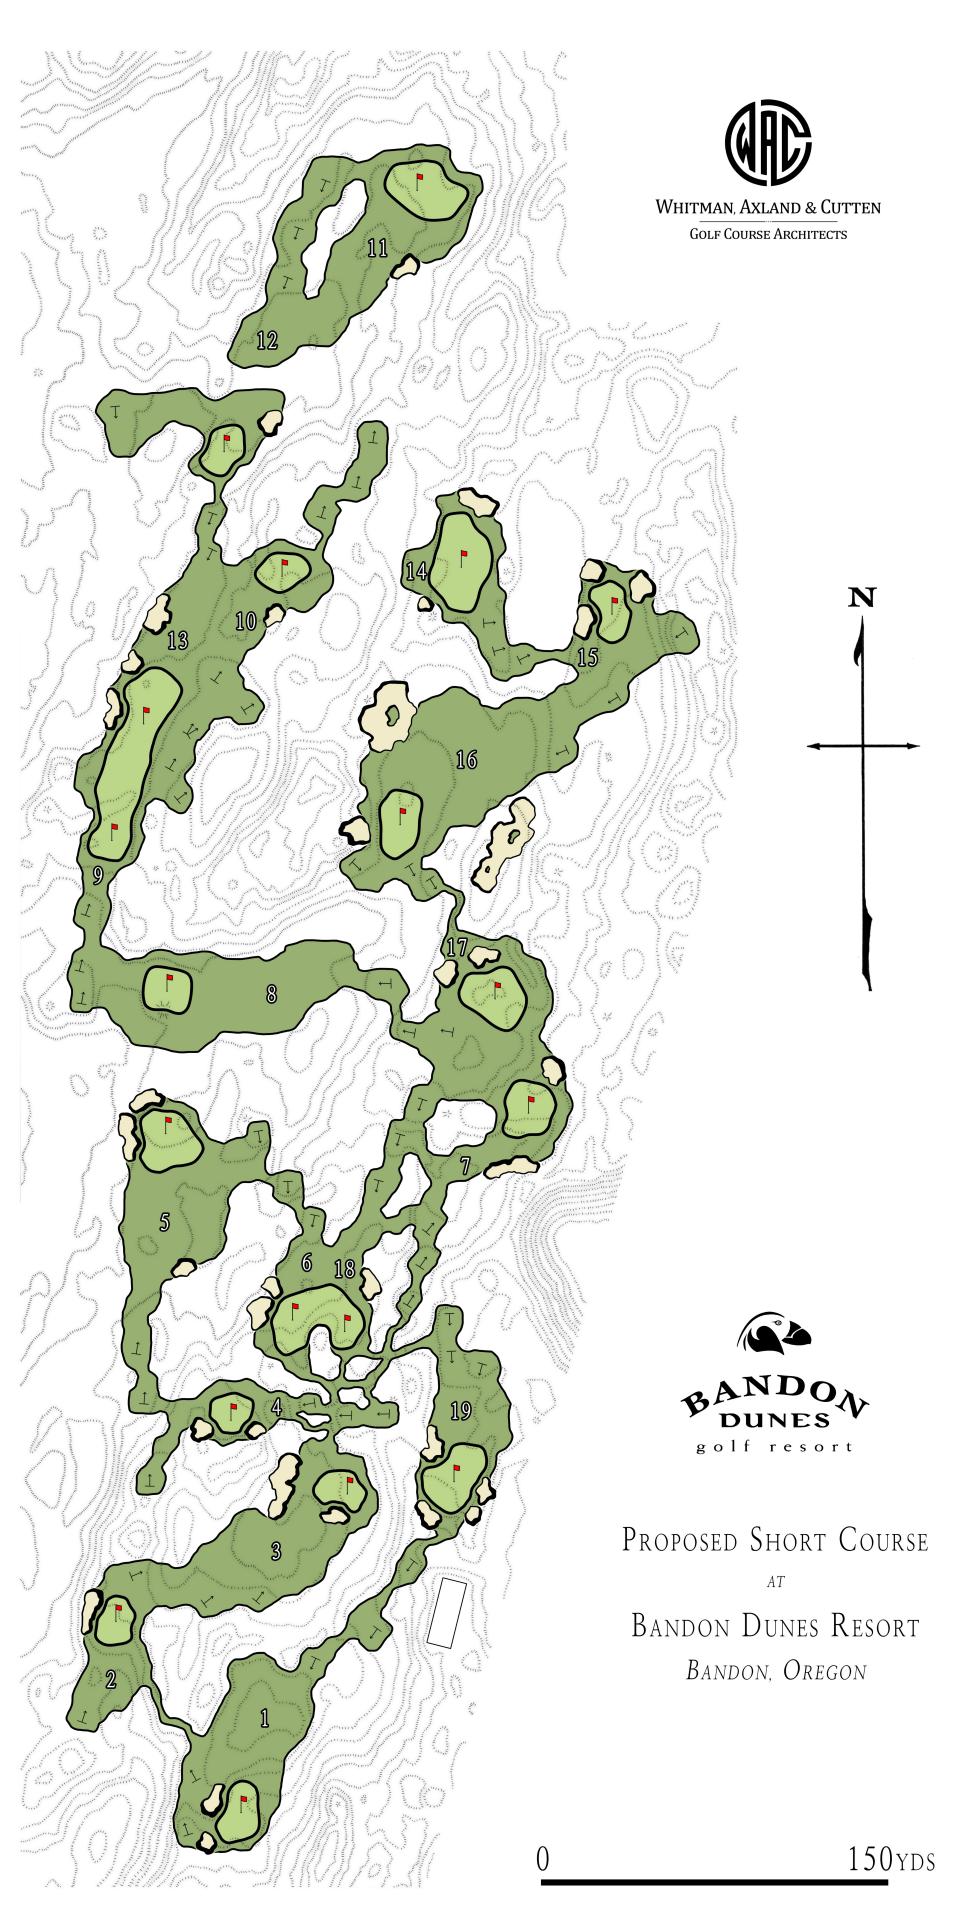 /content/dam/images/golfdigest/fullset/2023/1/Bandon Dunes Short Course_Artistic Master Plan by WAC Golf_Feb 2023.jpg